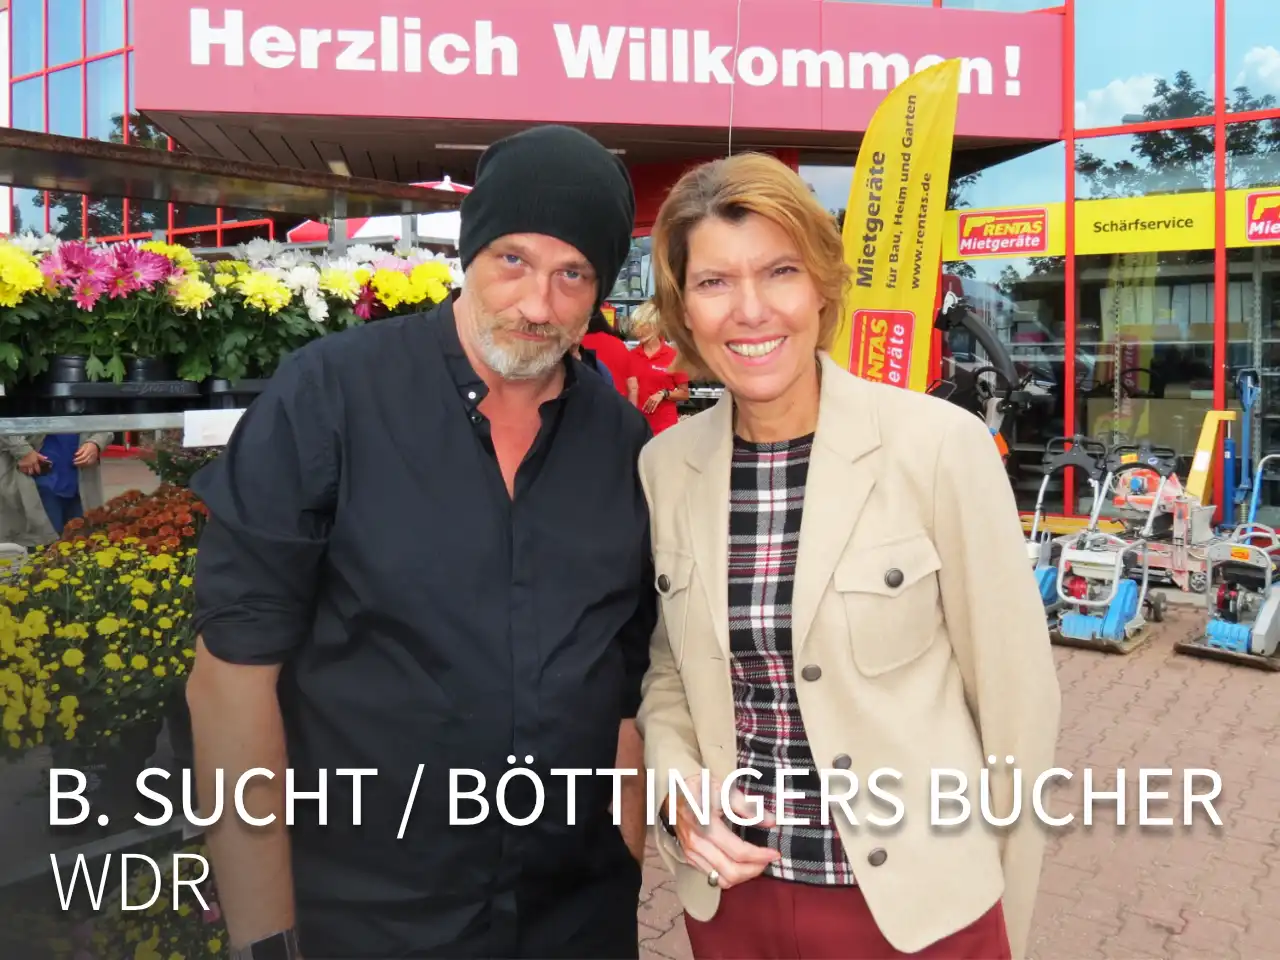 B.sucht / Böttingers Bücher